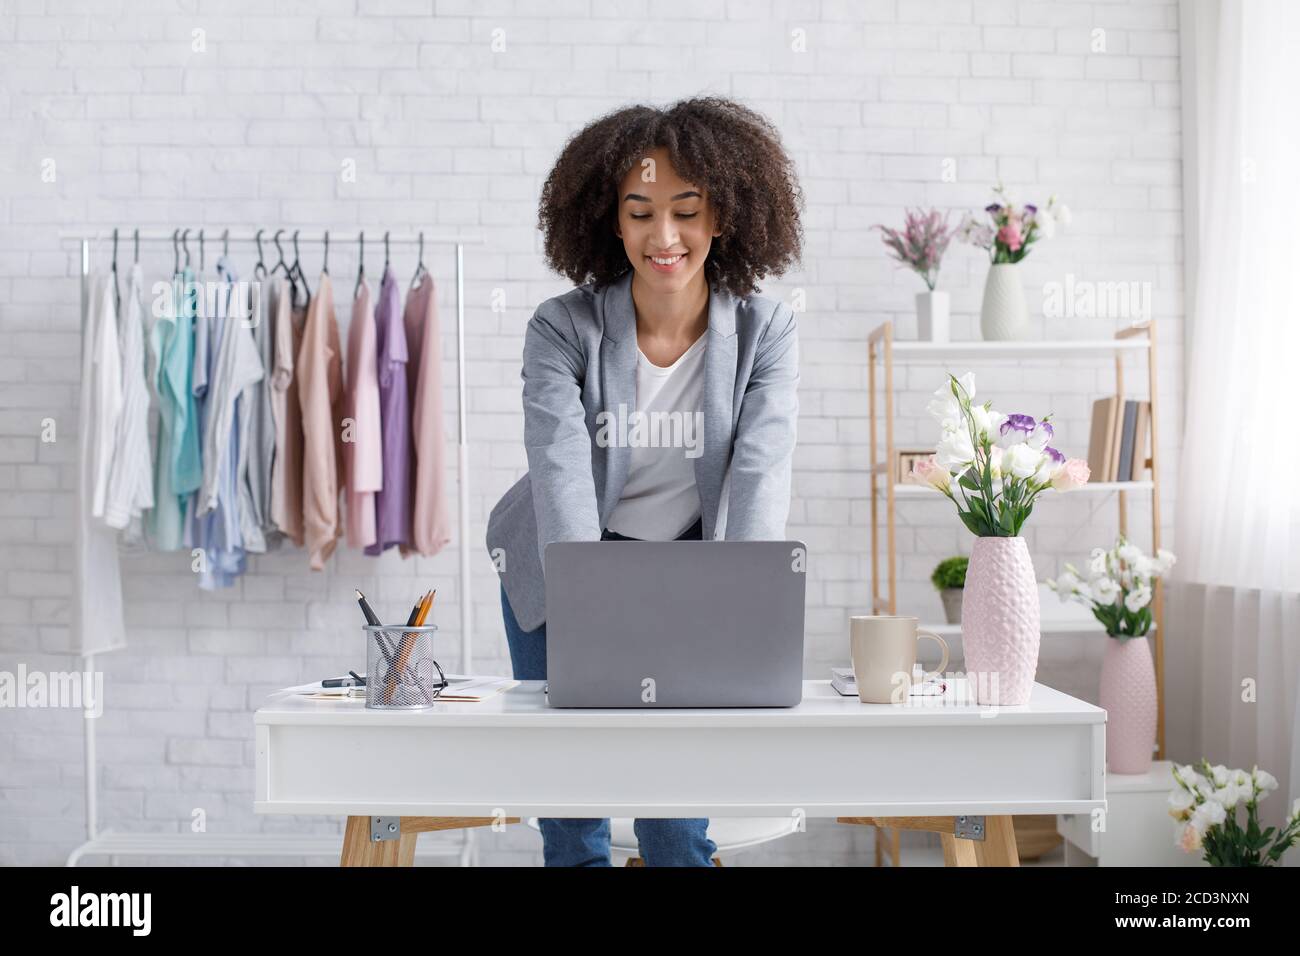 Démarrage à domicile. Femme afro-américaine souriante travaillant avec un ordinateur portable en studio Banque D'Images